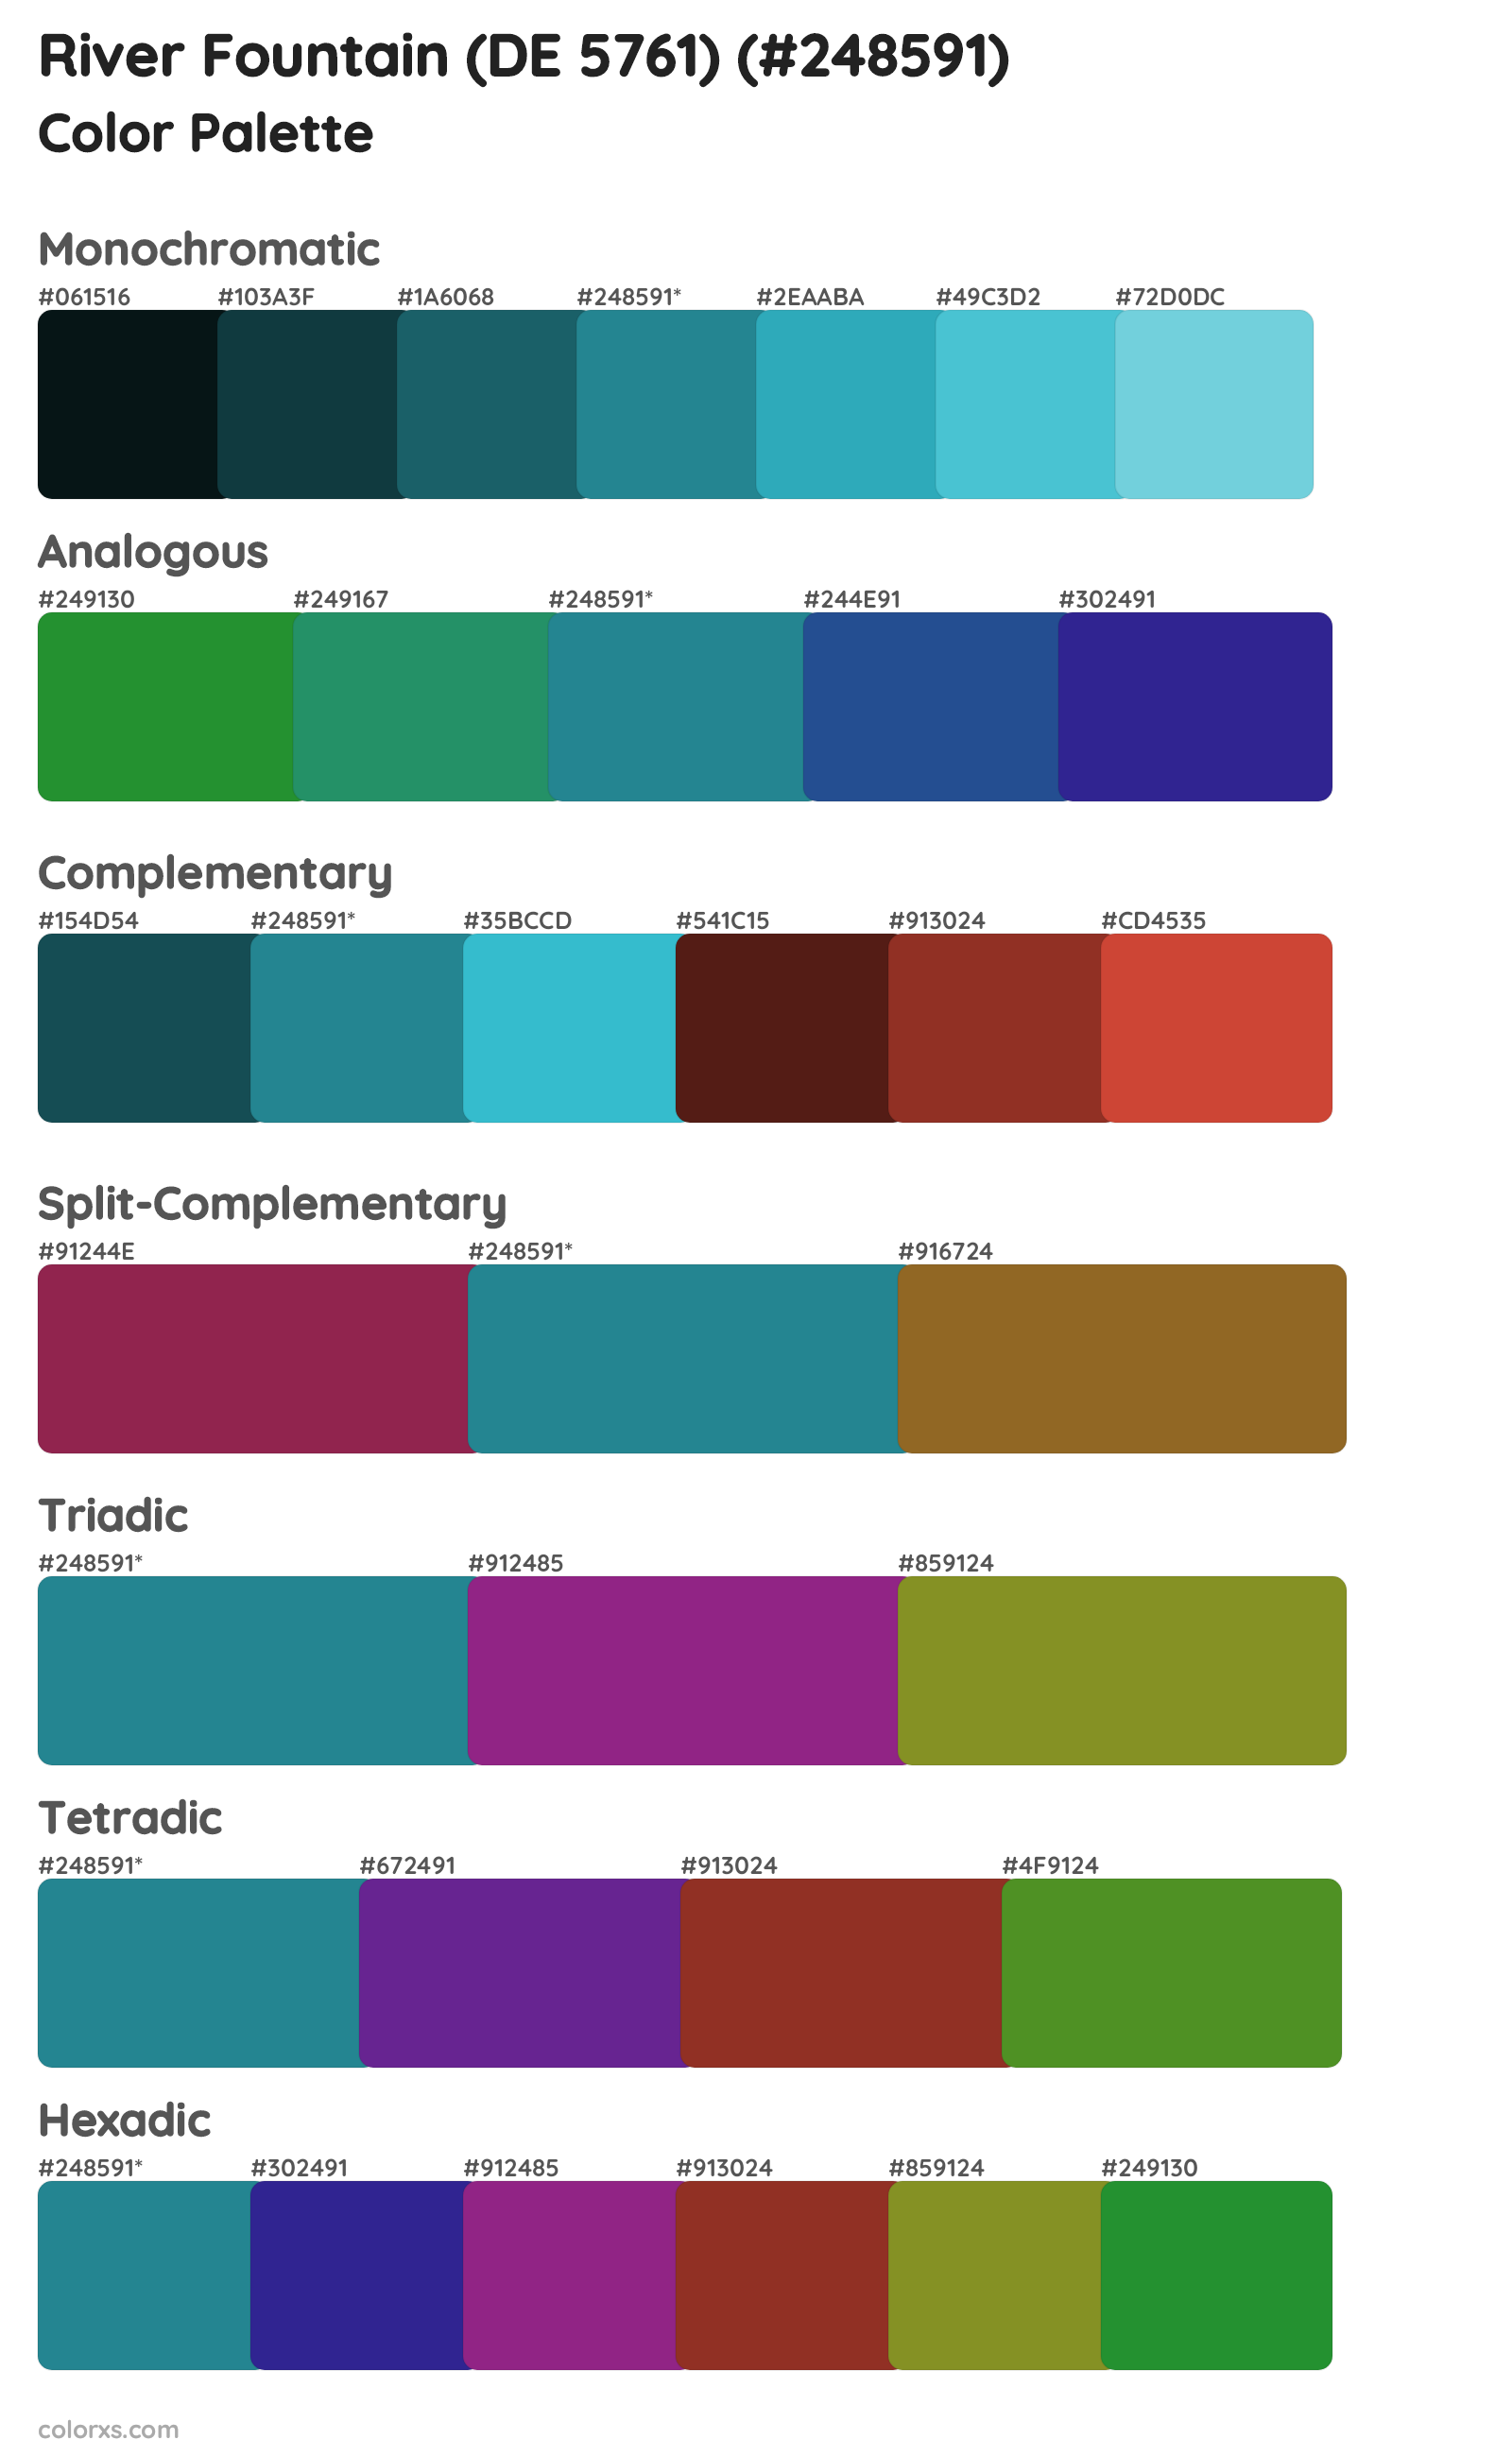 River Fountain (DE 5761) Color Scheme Palettes